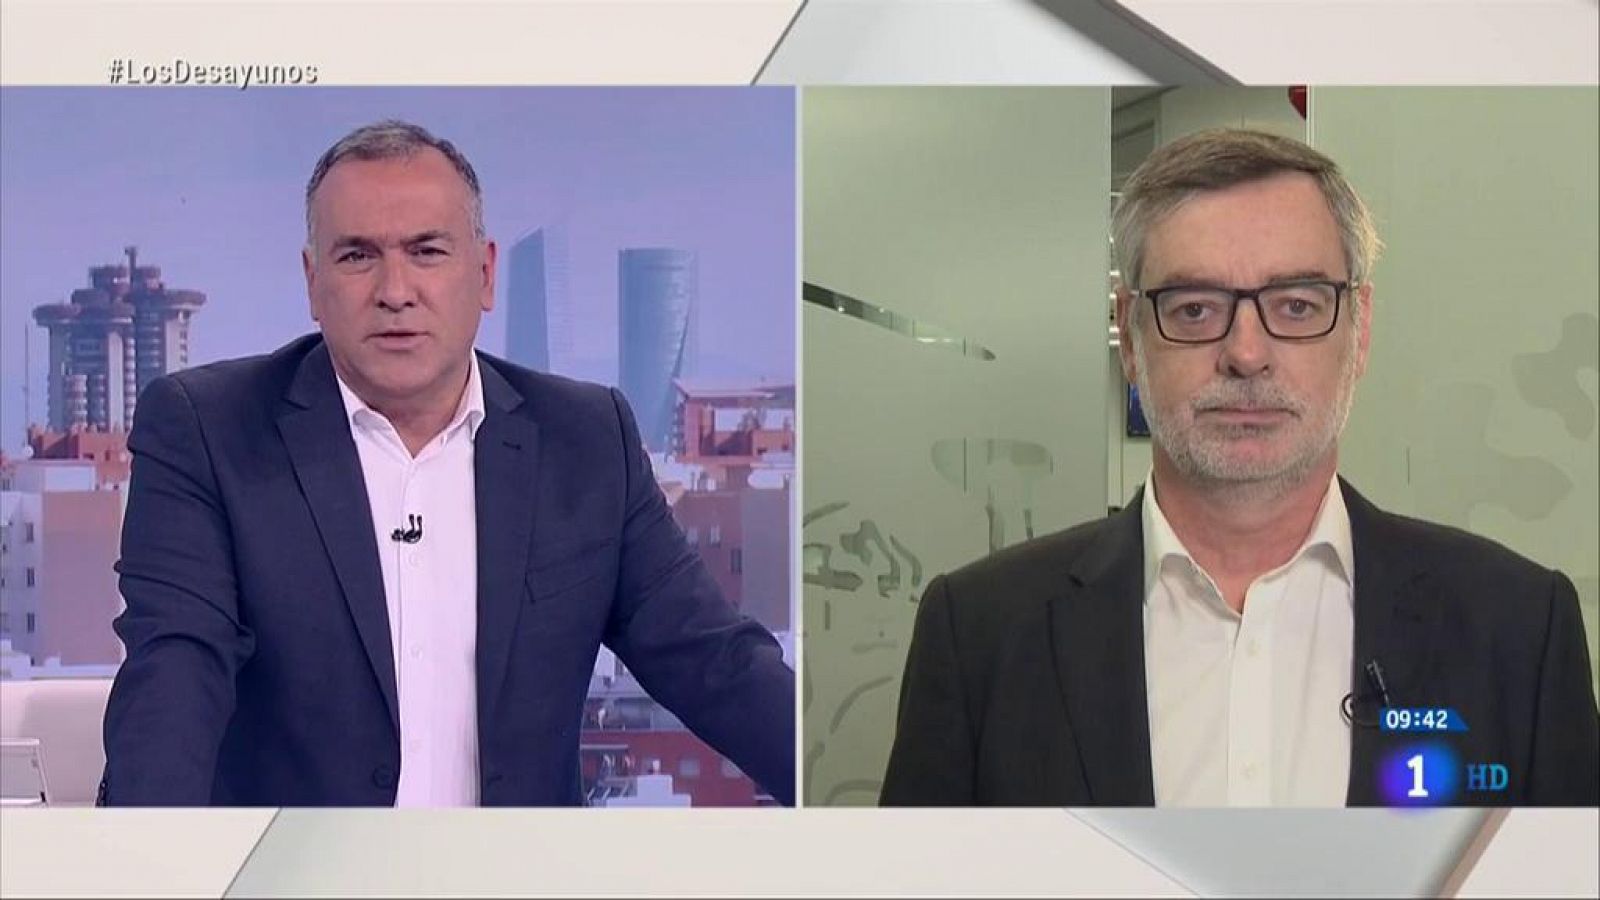 Entrevista en Los Desayunos de TVE: Villegas insiste en el "no" a Sánchez y rechaza que Cs sea una "bisagra" del bipartidismo - RTVE.es